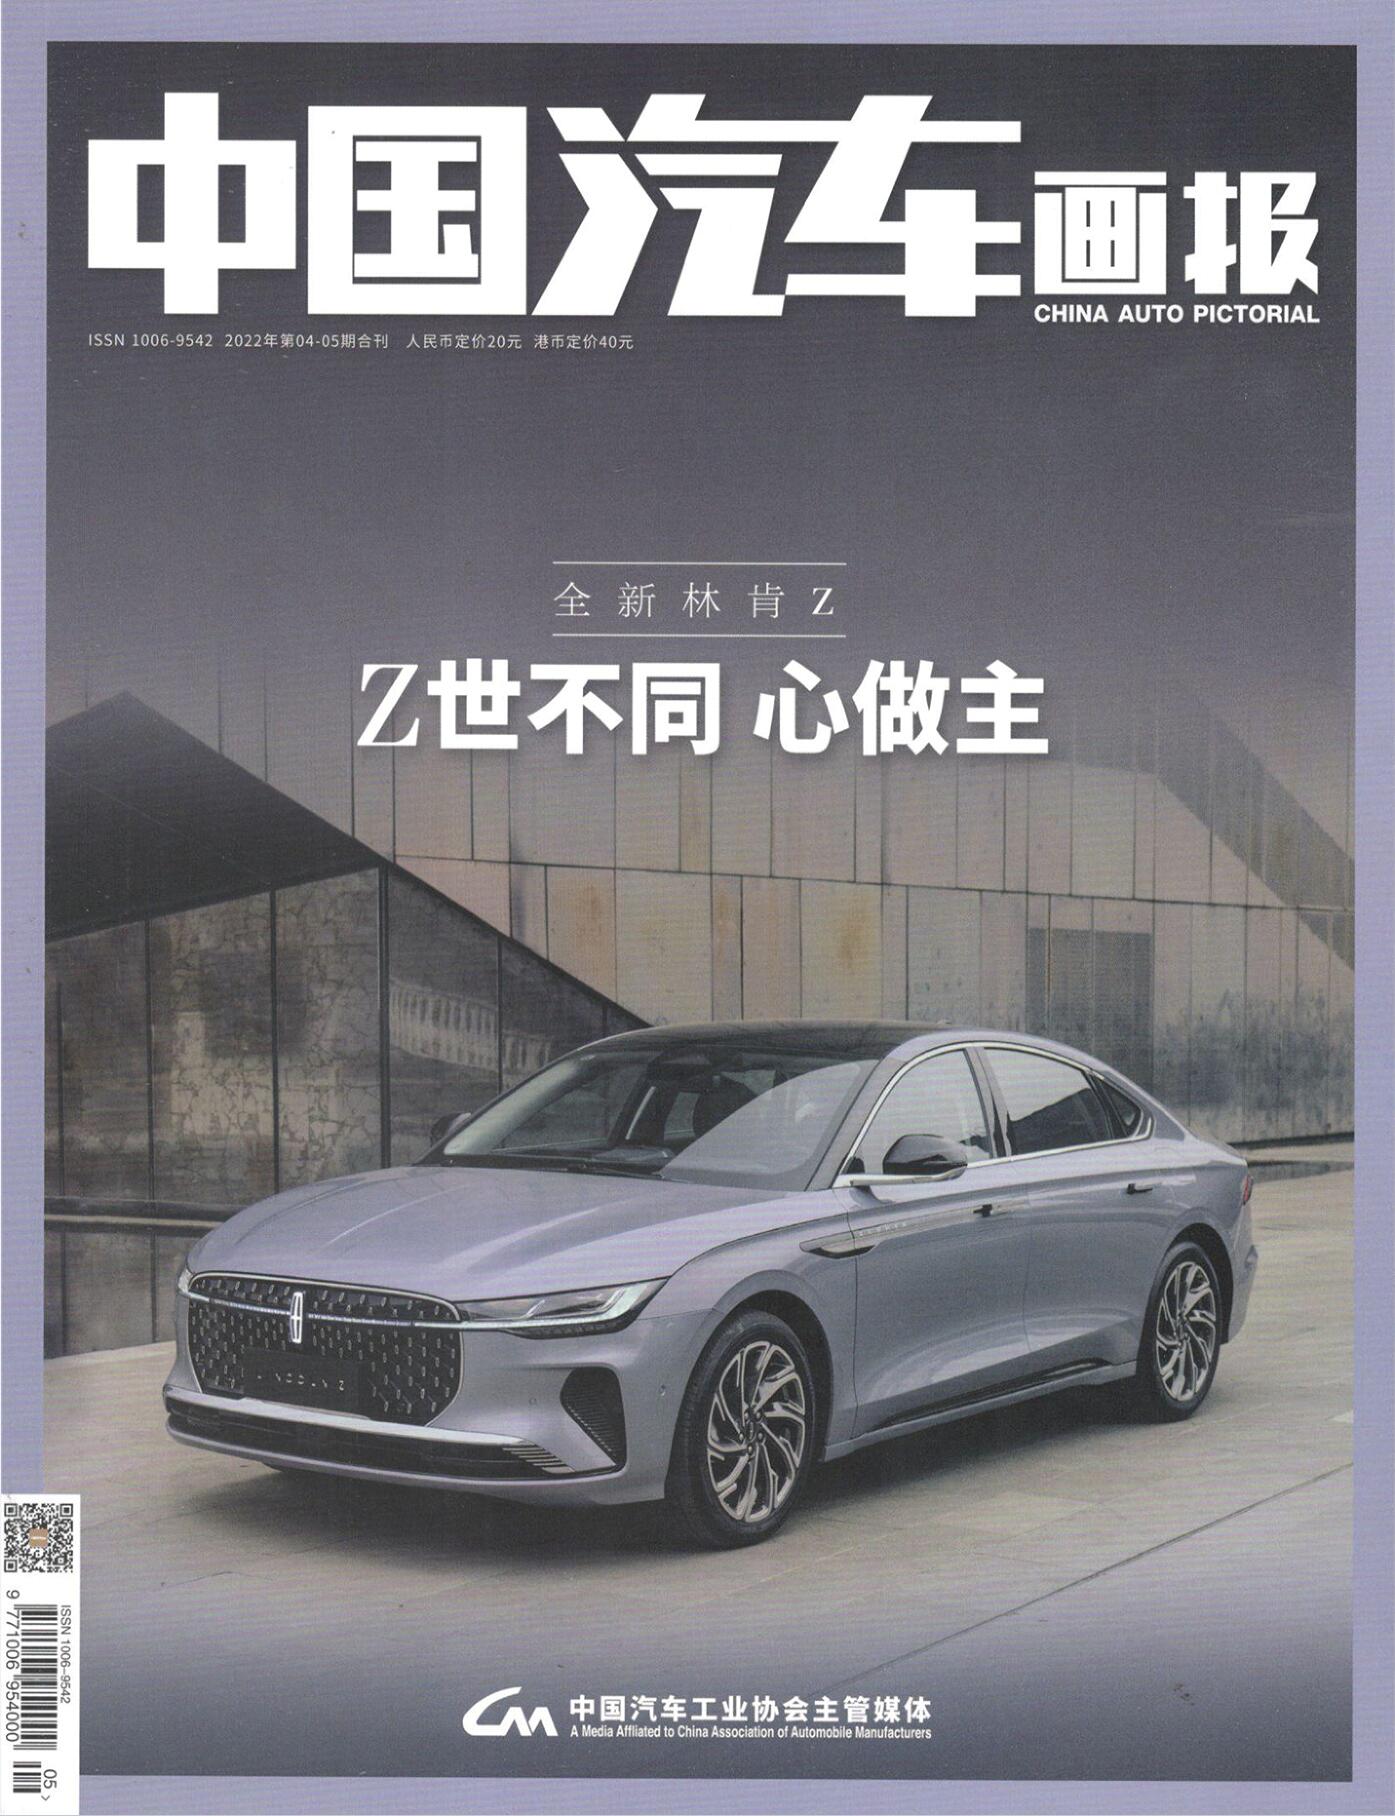 「期刊零售」《中国汽车画报》单期杂志购买链接